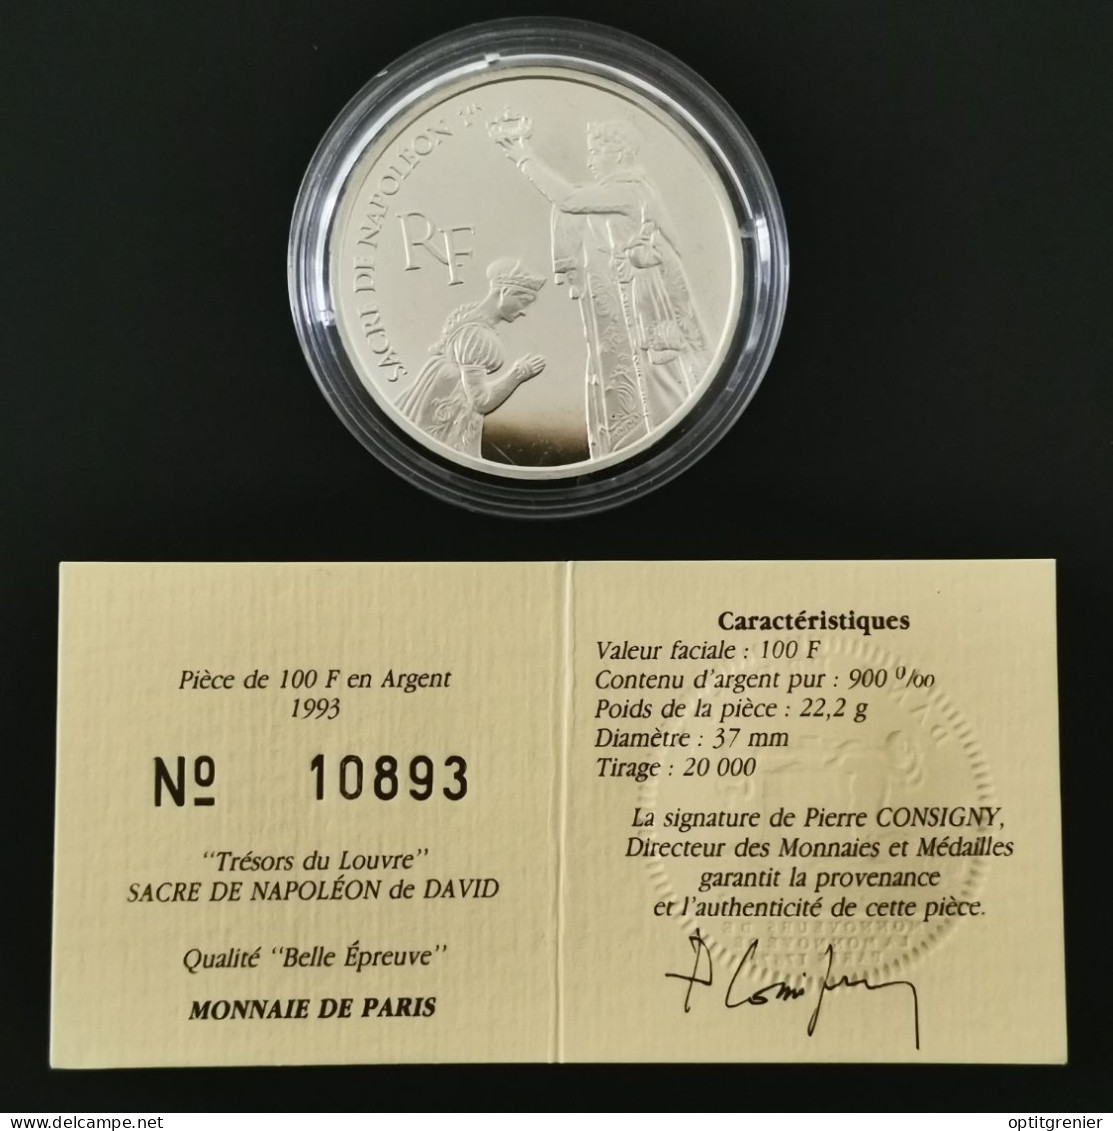 100 FRANCS ARGENT BE 1993 LOUVRE LE SACRE DE NAPOLEON FRANCE / SANS COFFRET / PROOF SILVER - 100 Francs